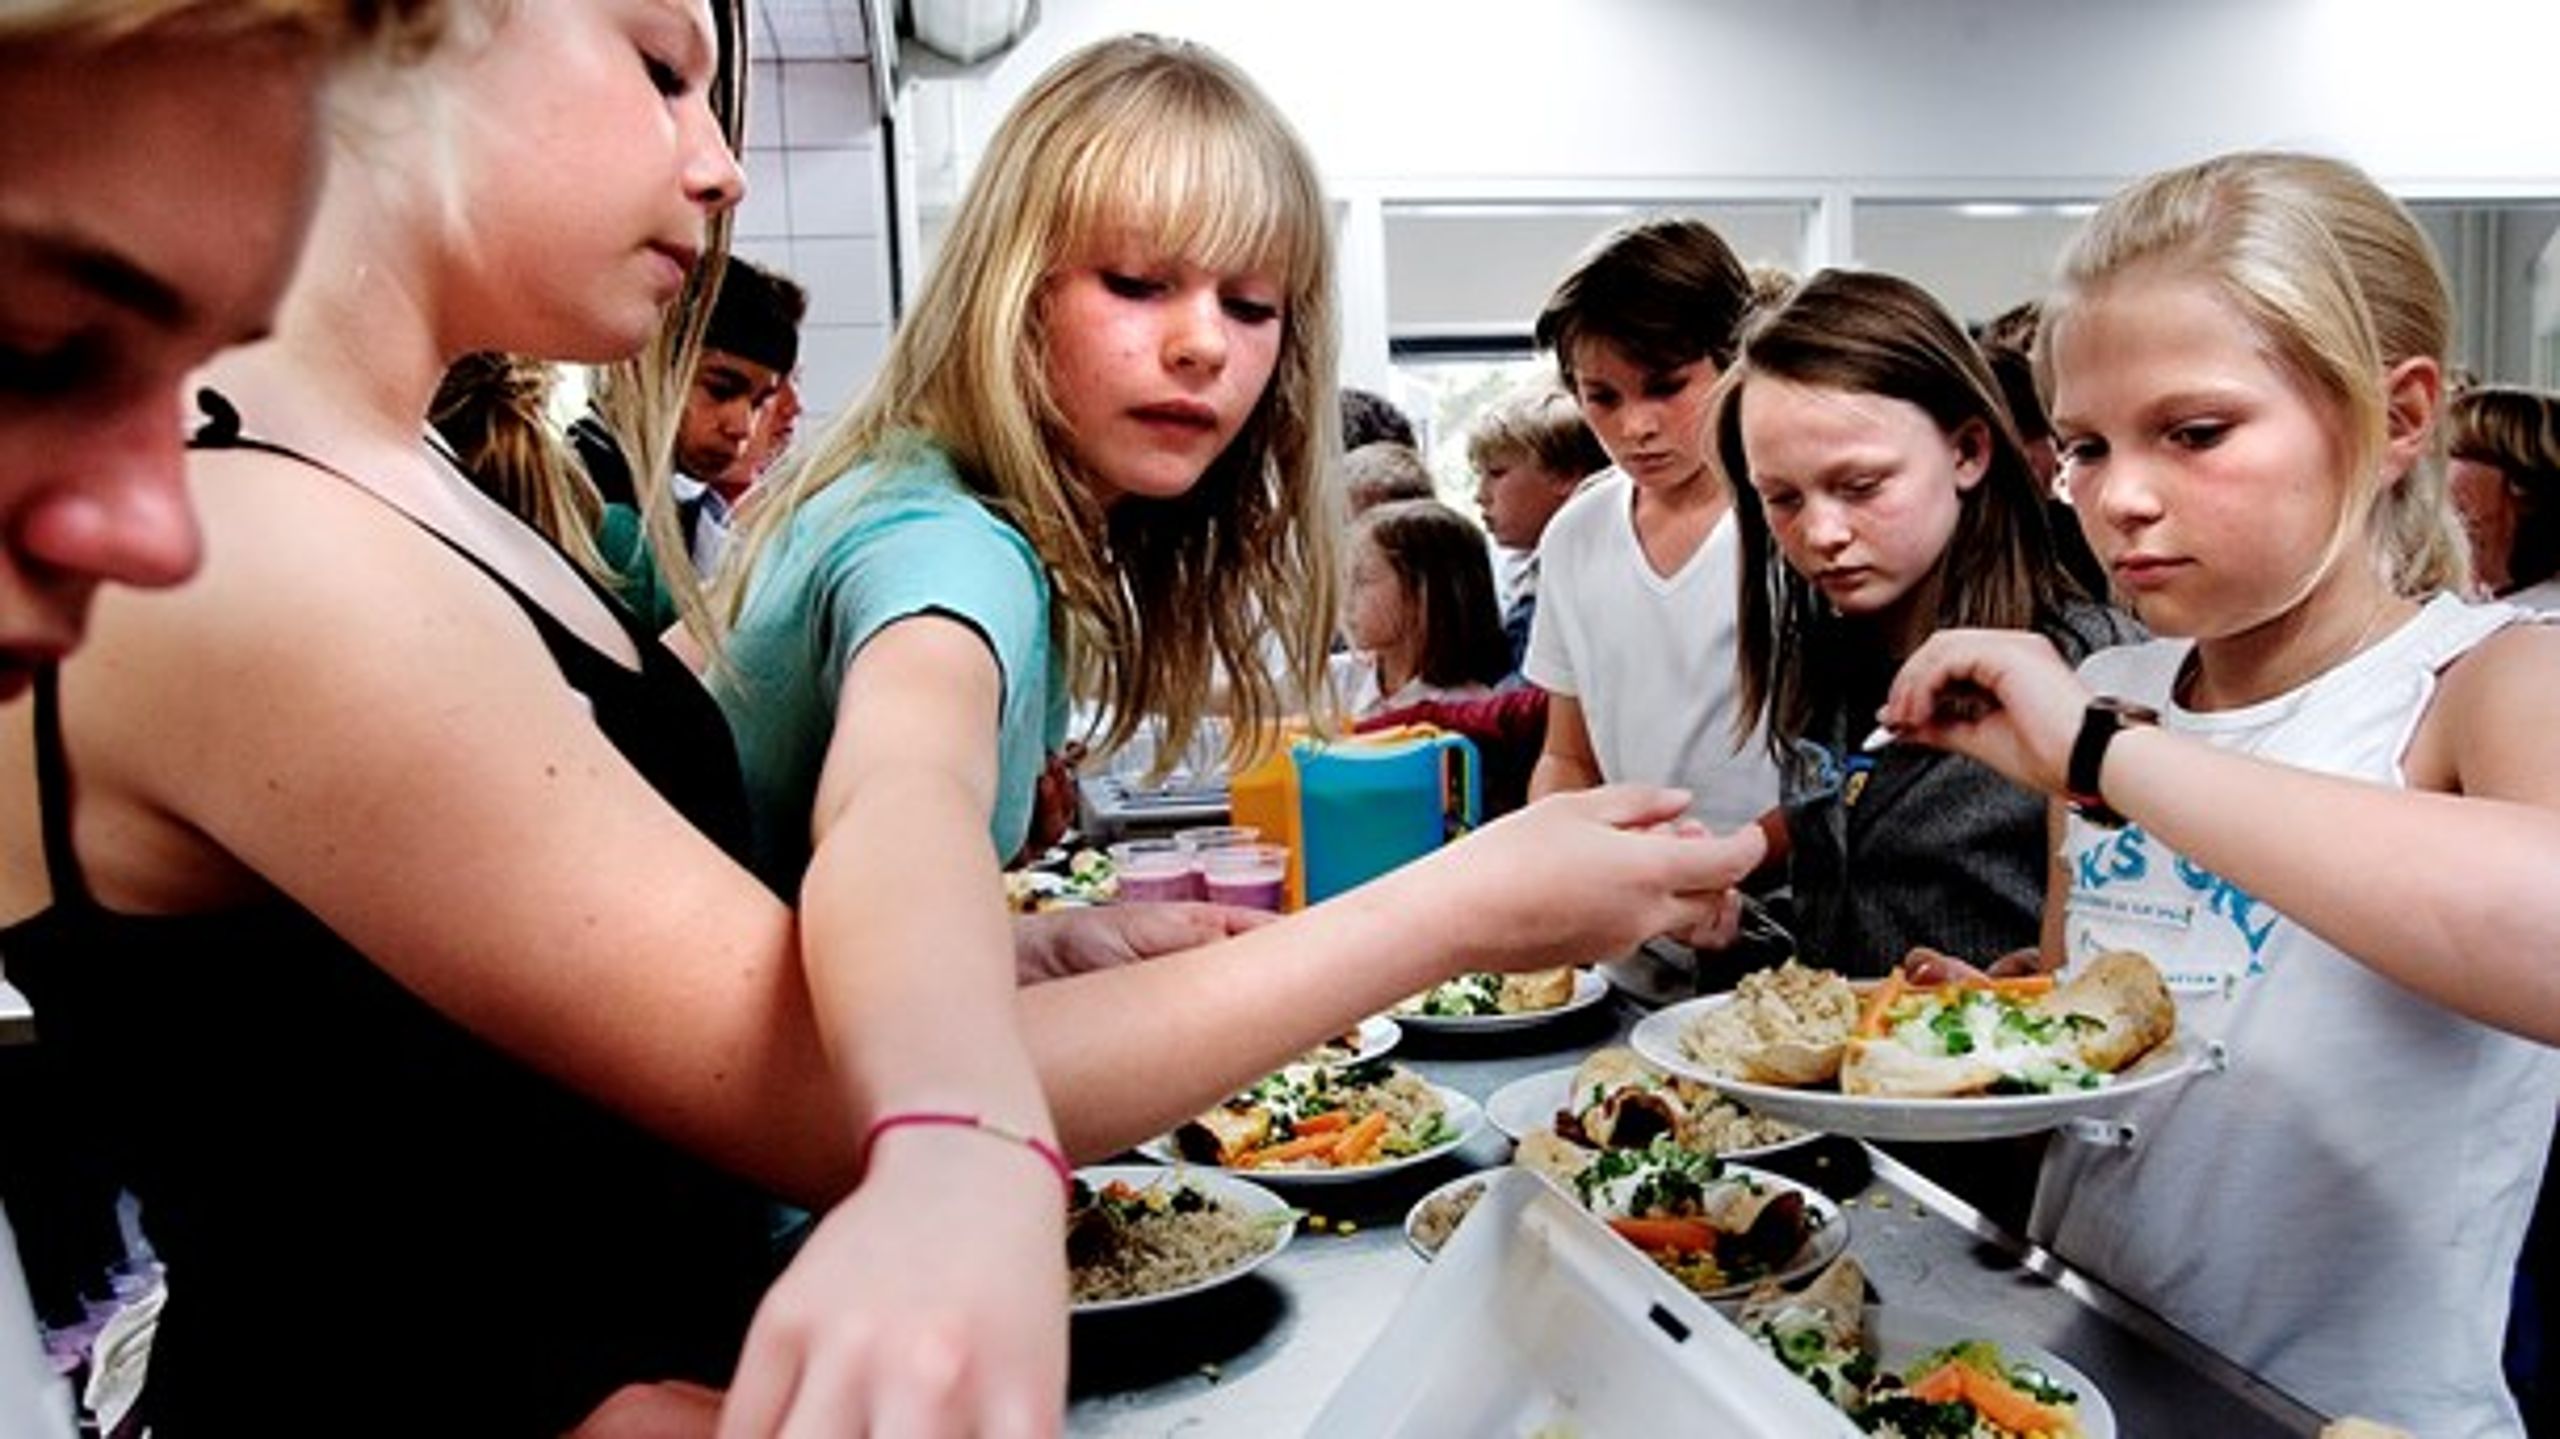 Hvis folkeskolen skal leve op til sit formål om at ruste børn og unge til deres fremtidige liv, så vil det være helt oplagt at bruge måltidet som omdrejningspunkt for udvikling, trivsel og dannelse, skriver Kenneth Højgaard.